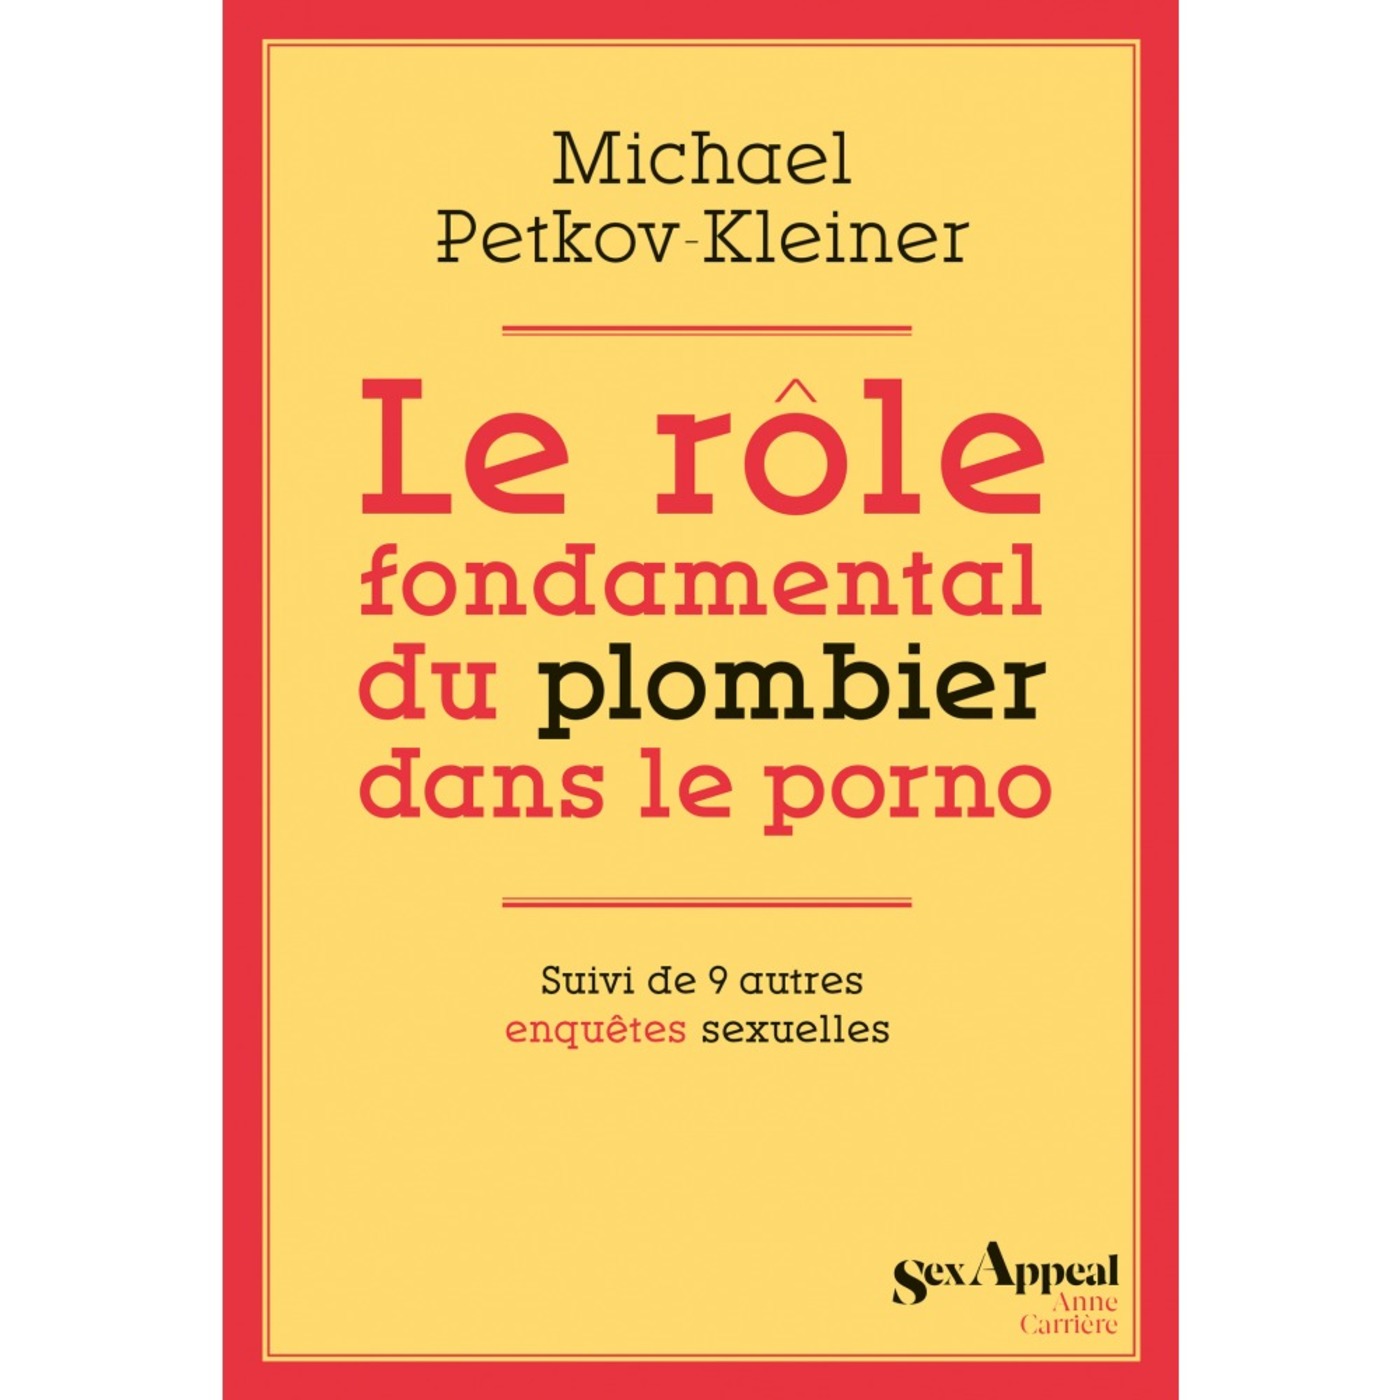 Le rôle fondamental du plombier dans le porno : Michael Petkov-Kleiner